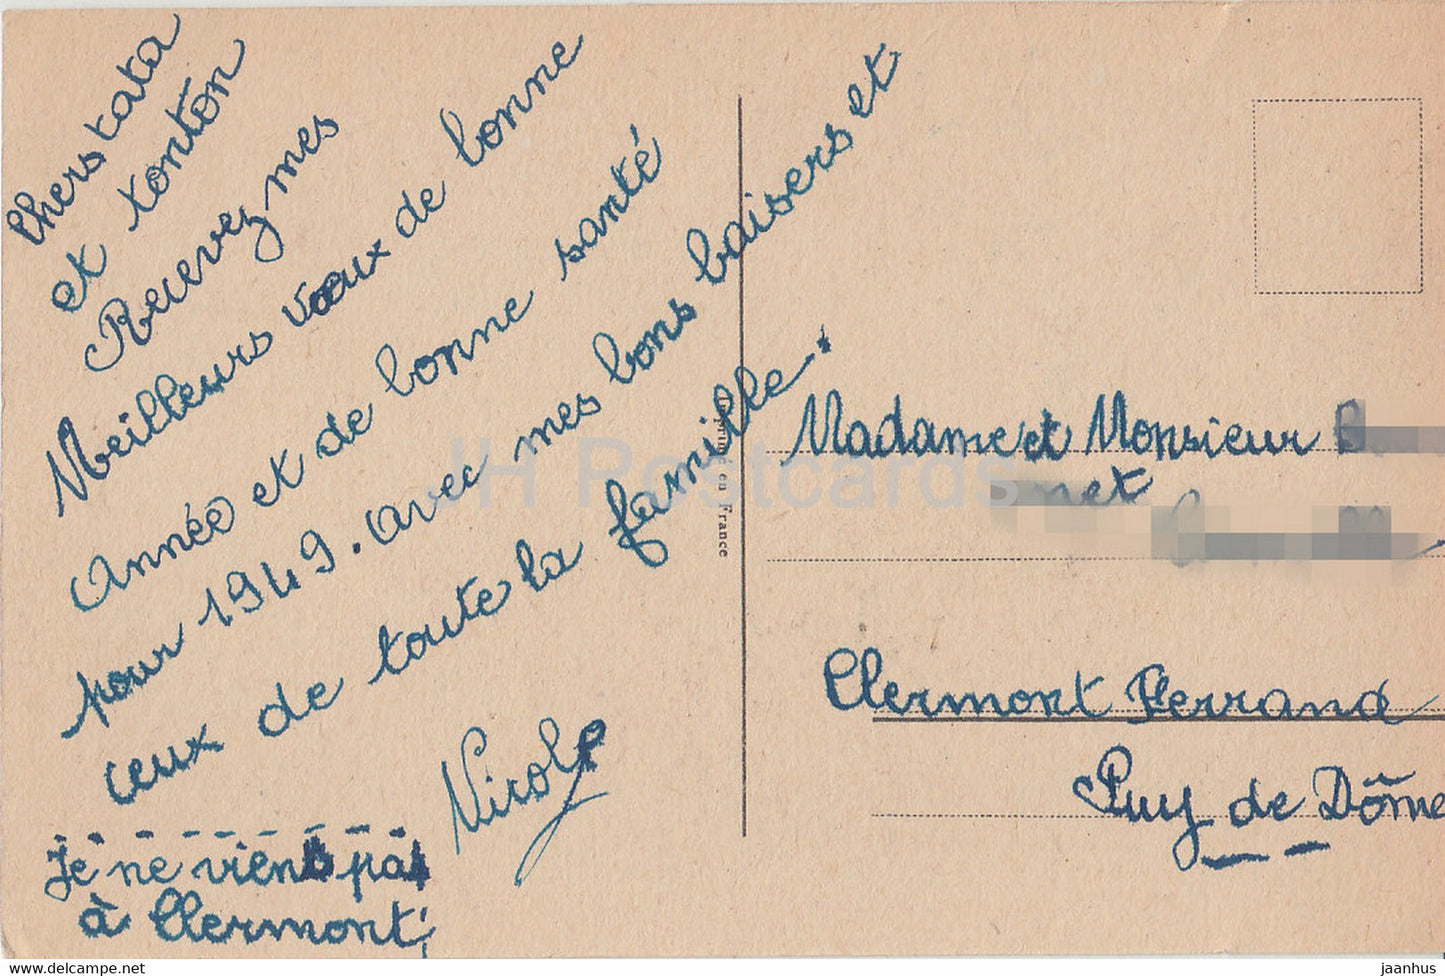 Carte de voeux Nouvel An - Bonne et Heureuse Fete - fleurs - roses - illustration - carte postale ancienne - France - occasion